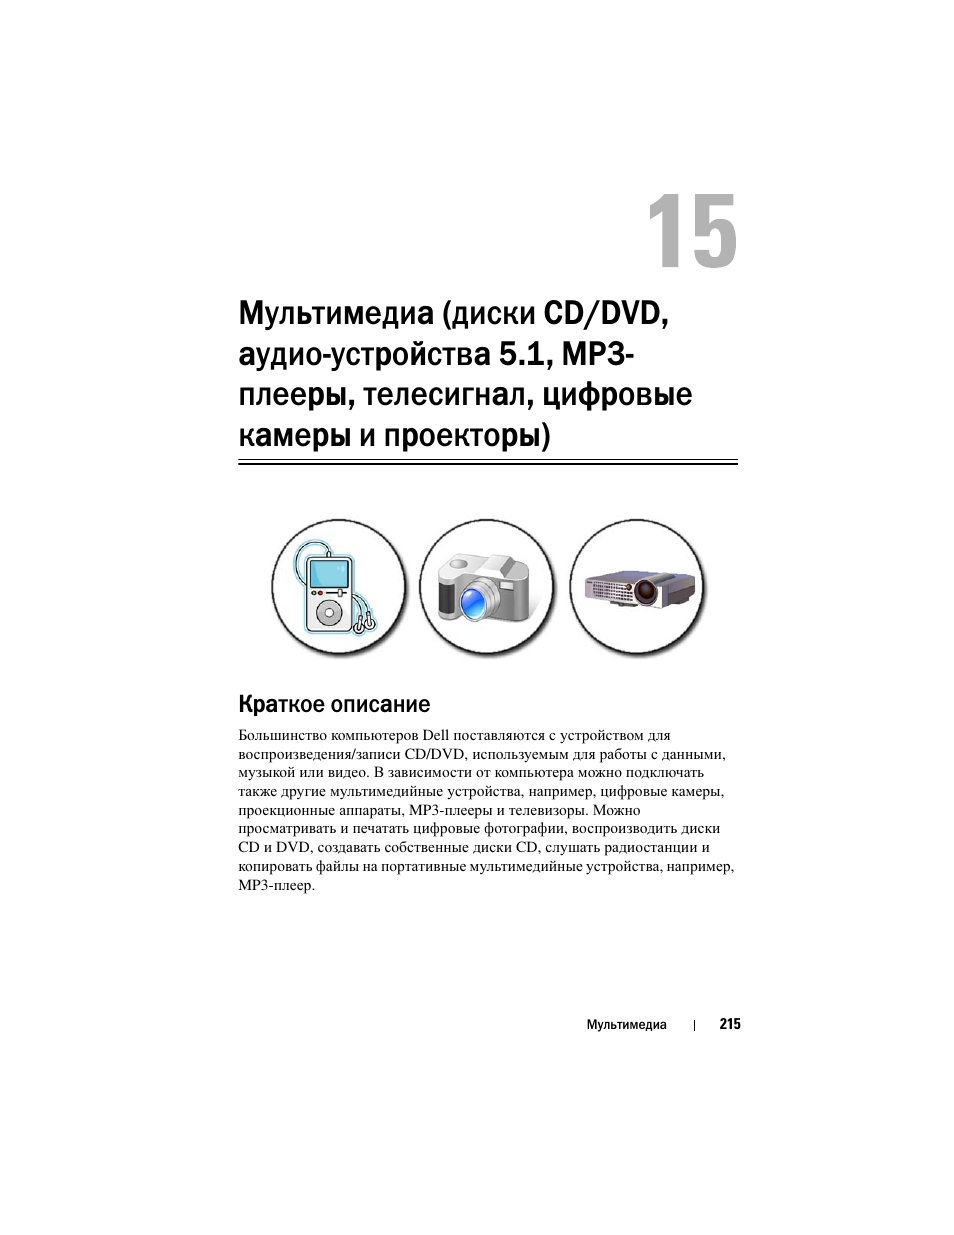 Краткое описание, Мультимедийные устройства cd, dvd и | Инструкция по эксплуатации Dell Inspiron 560 | Страница 215 / 384